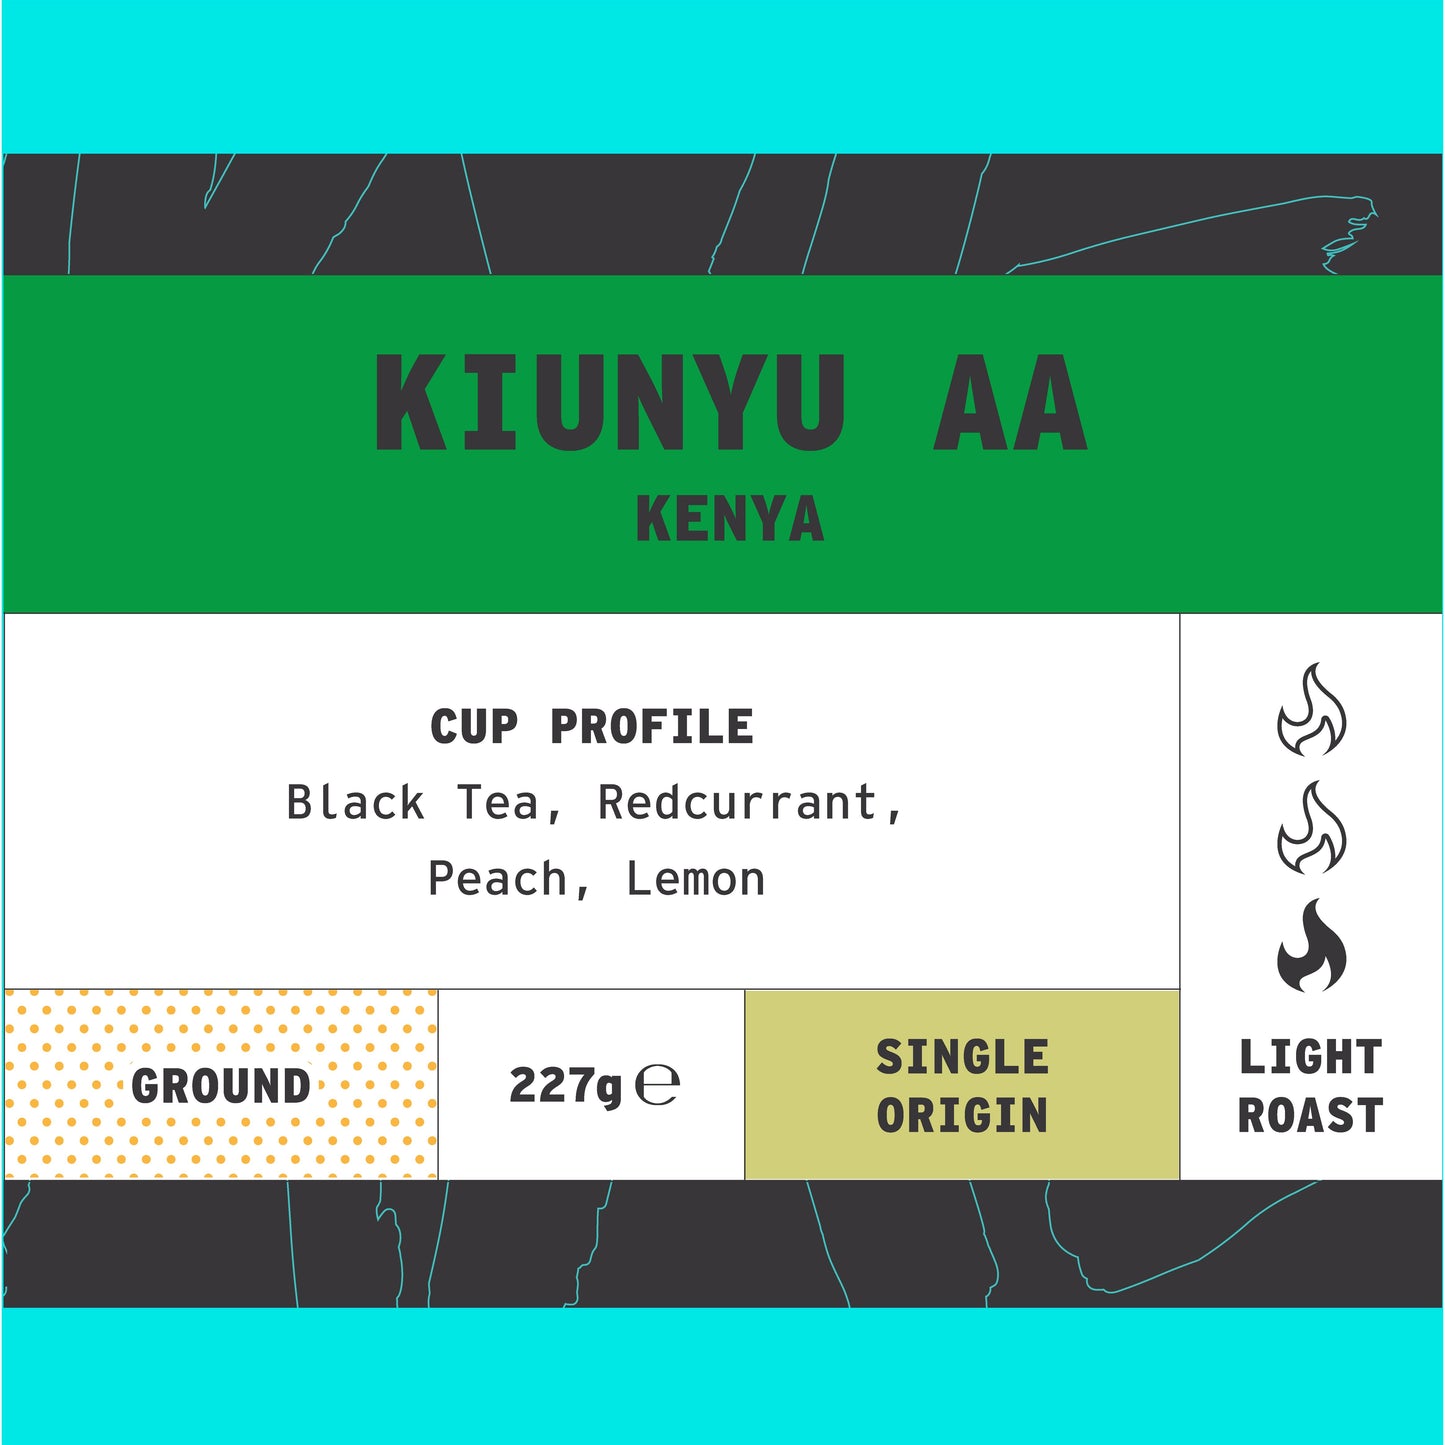 Kenya - Kiunyu AA